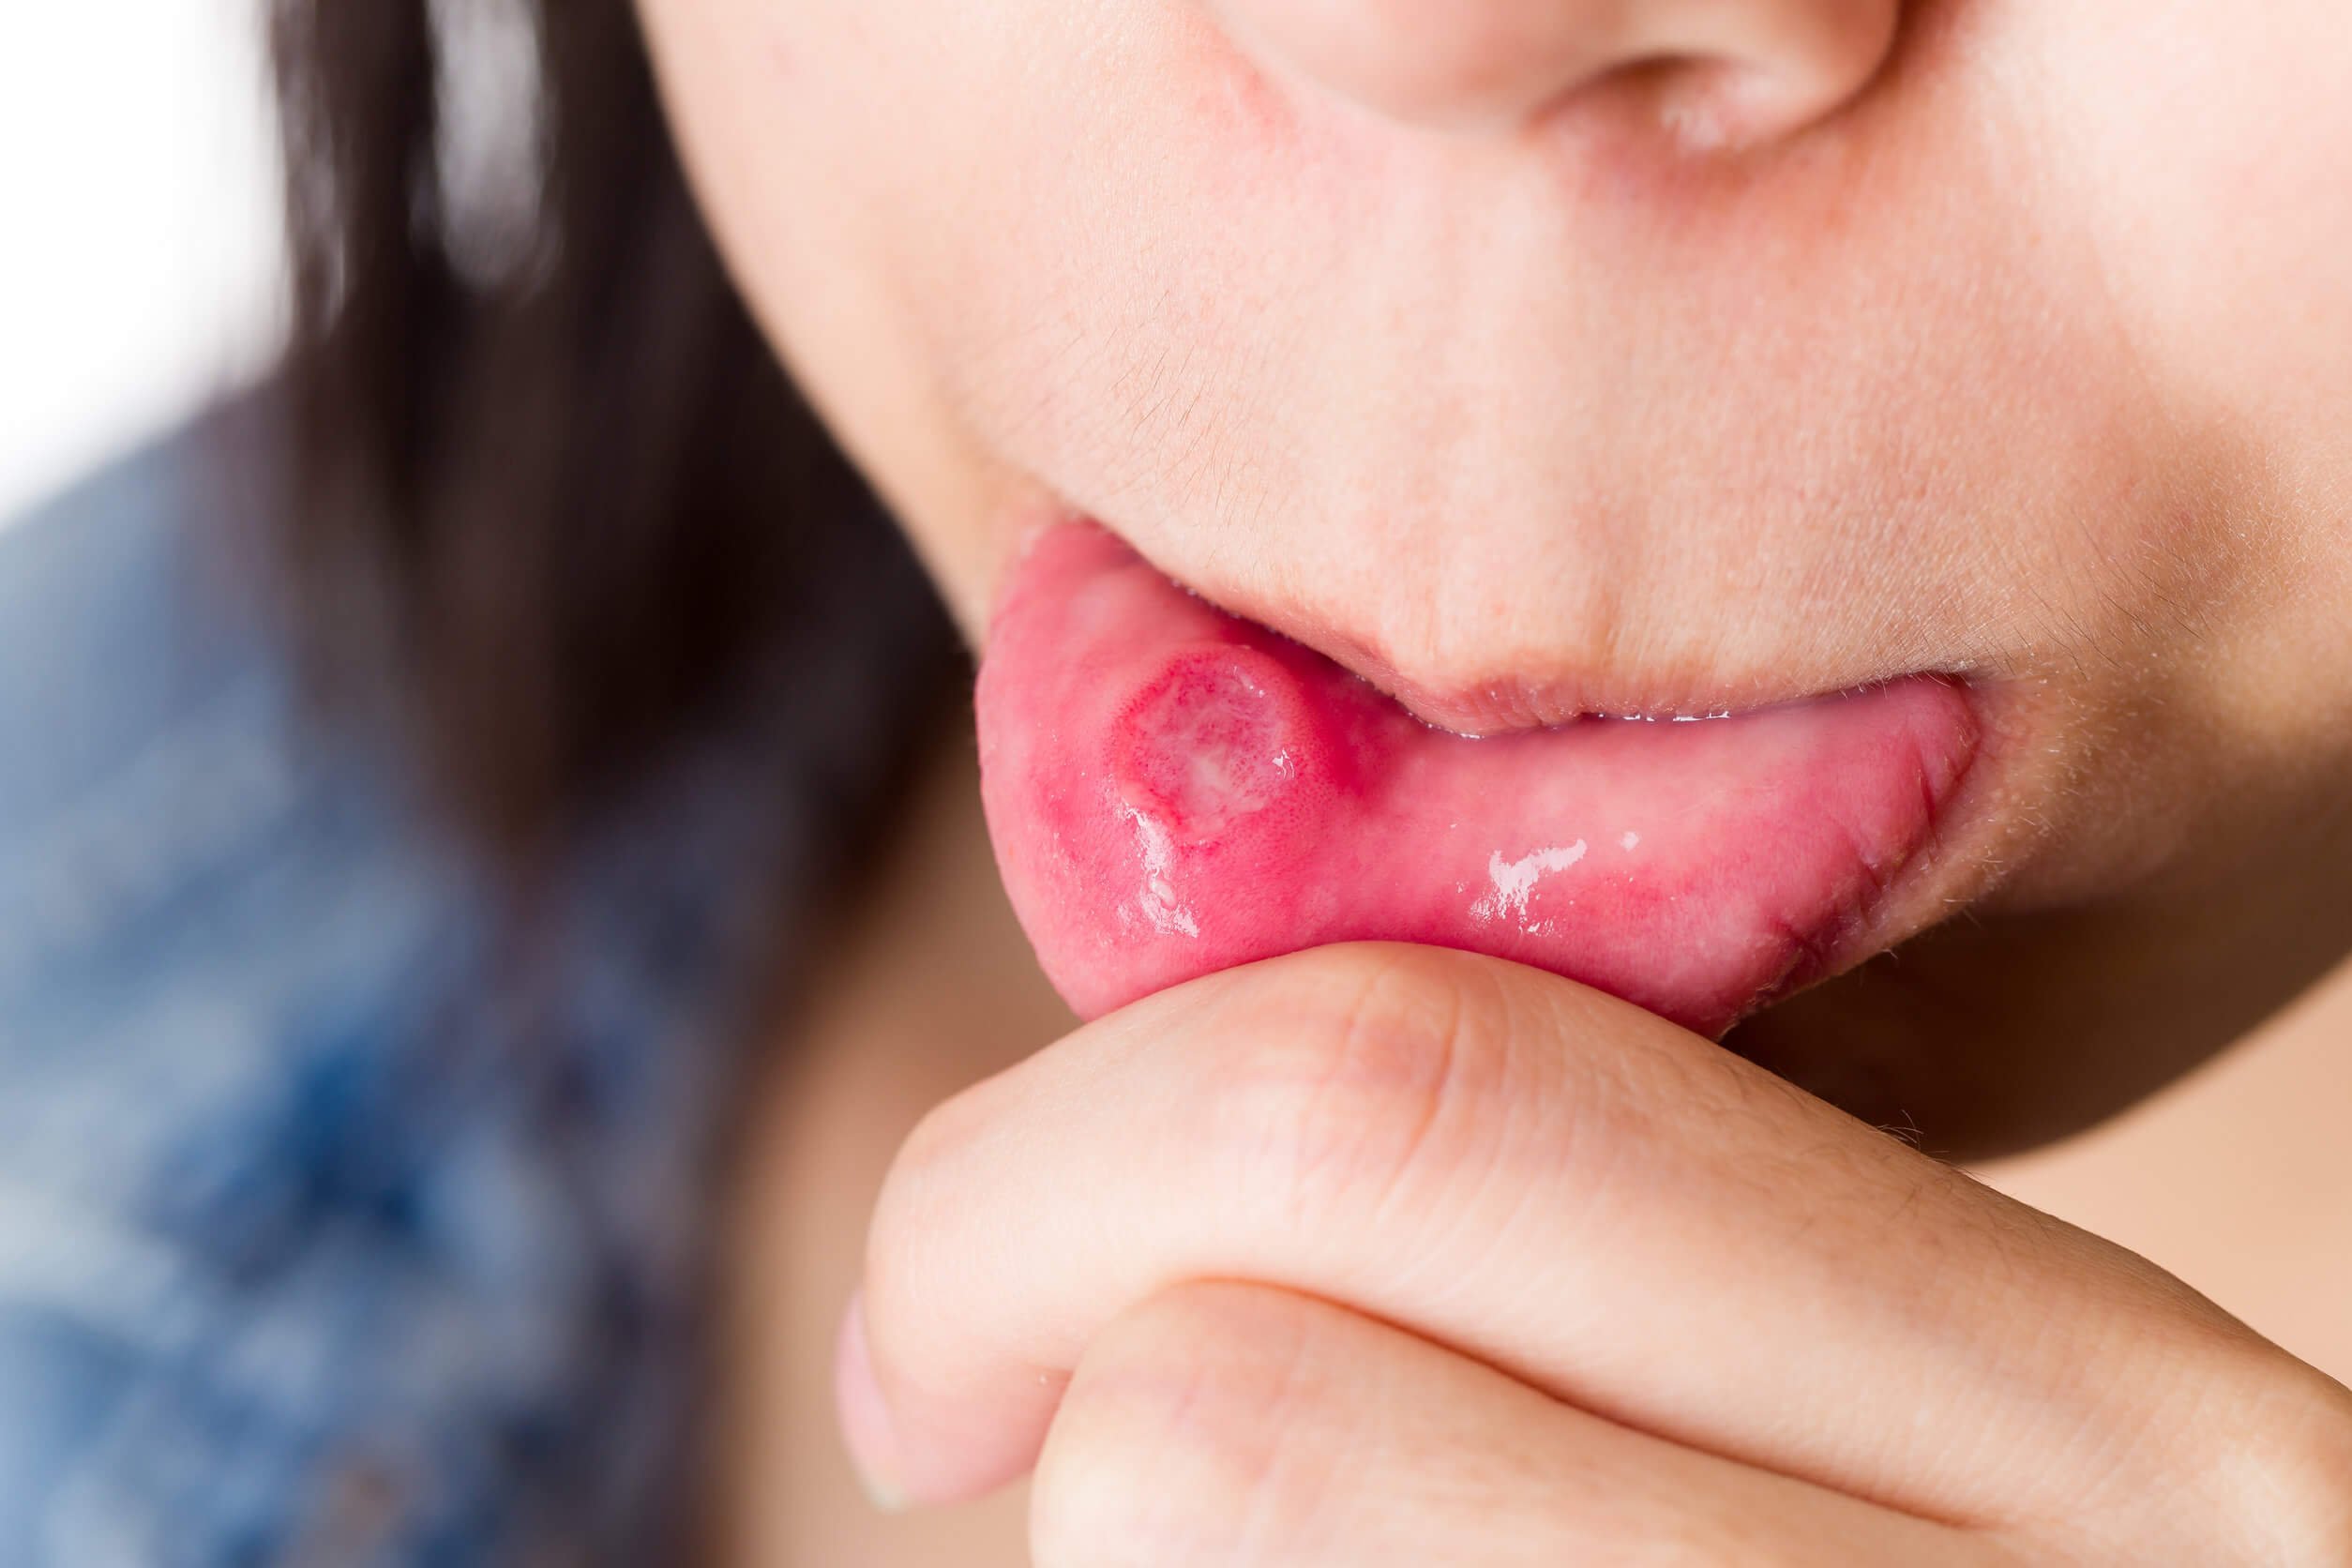 Mukozelen - Läsion auf der Zunge